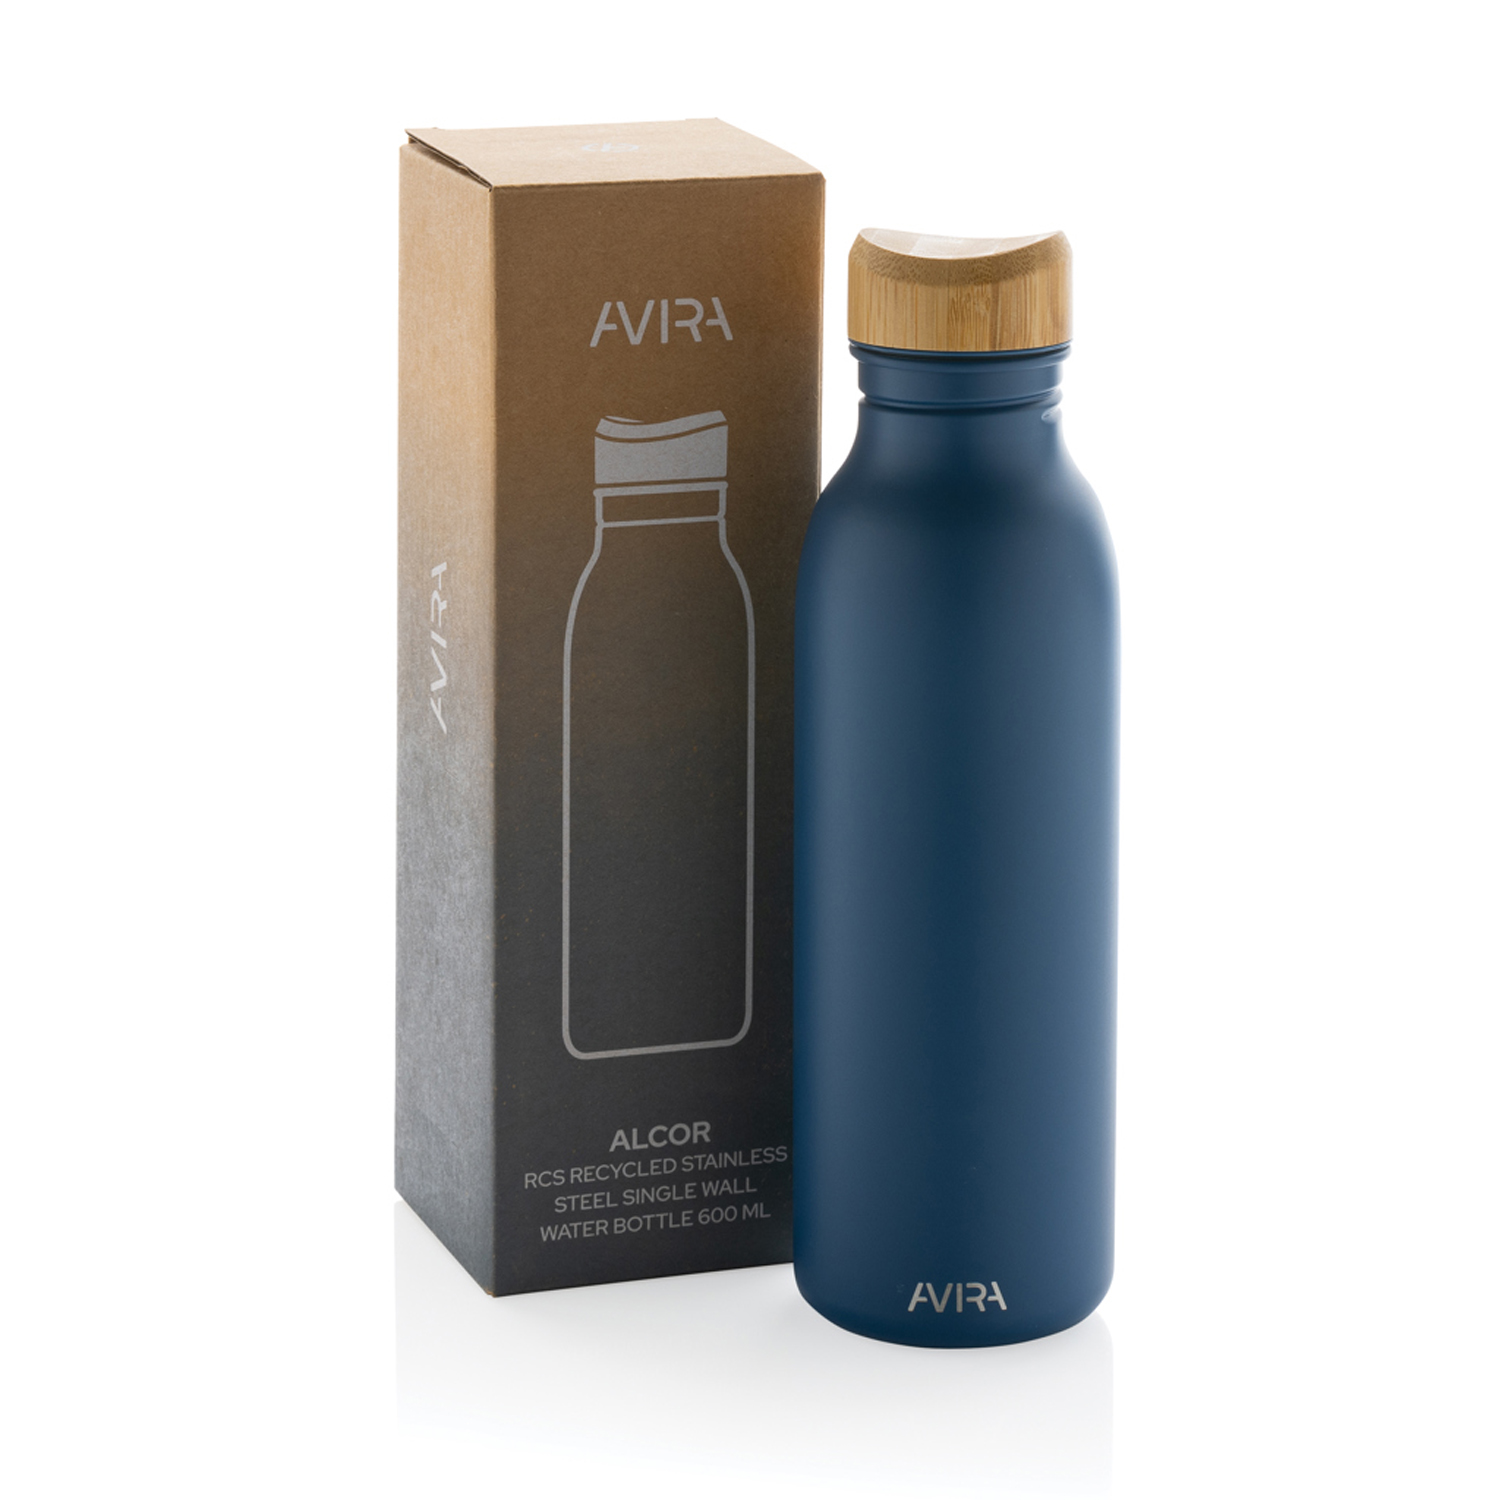 Бутылка для воды Avira Alcor из переработанной стали RCS